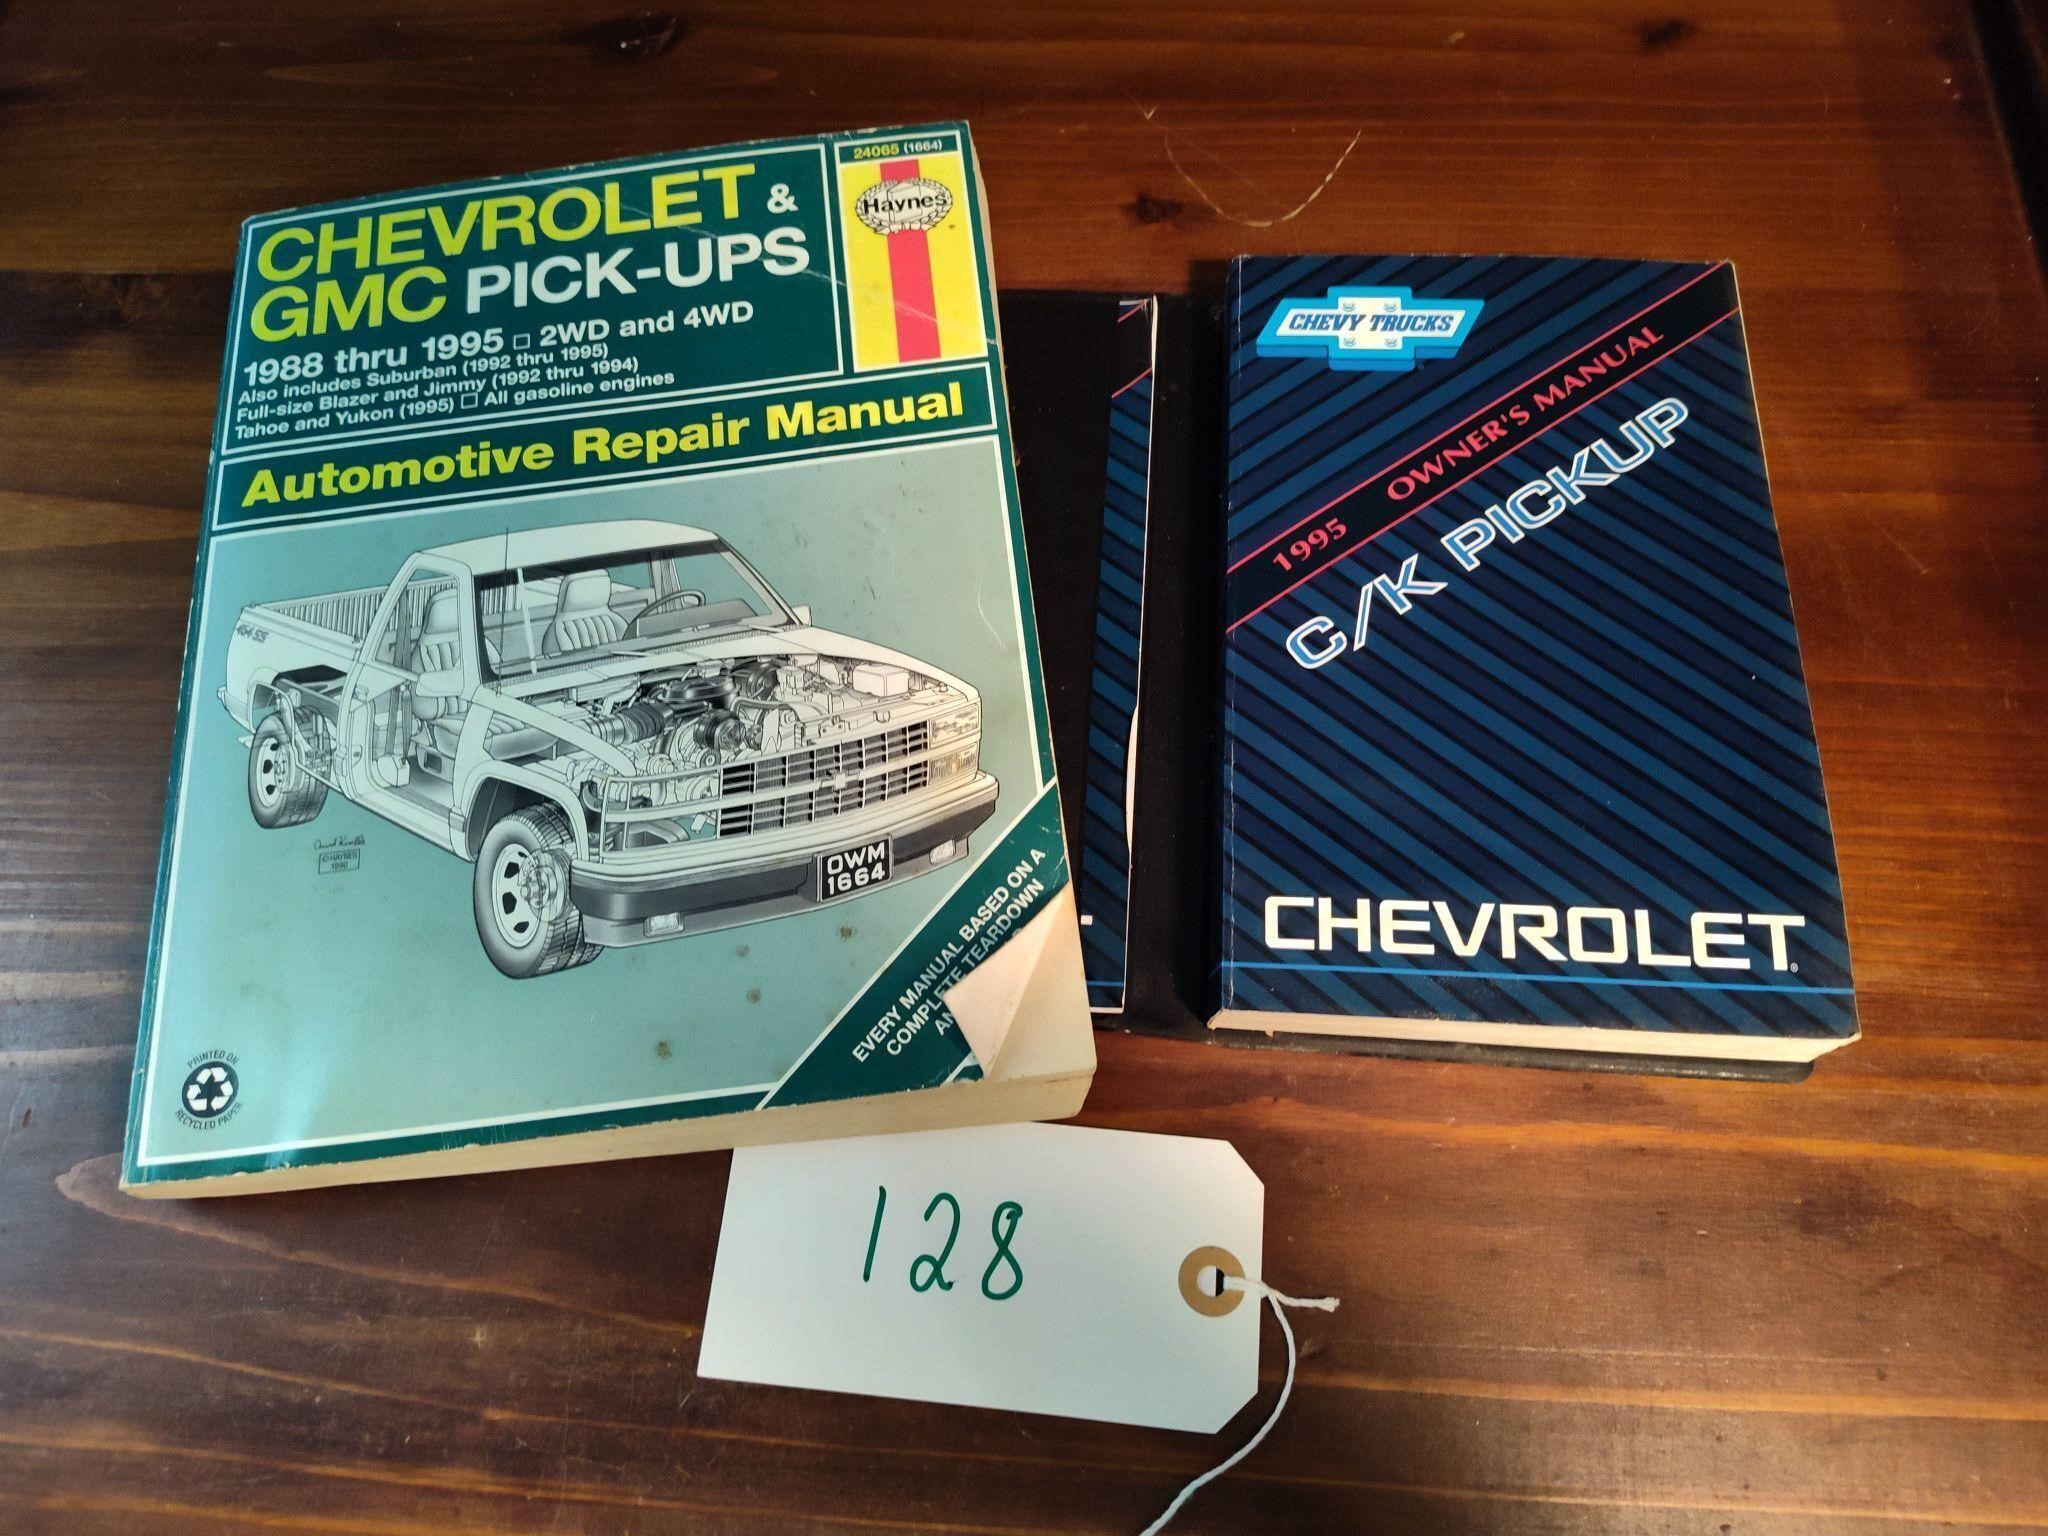 GMC Trucks Repair Manual & Chevy Owners Manual